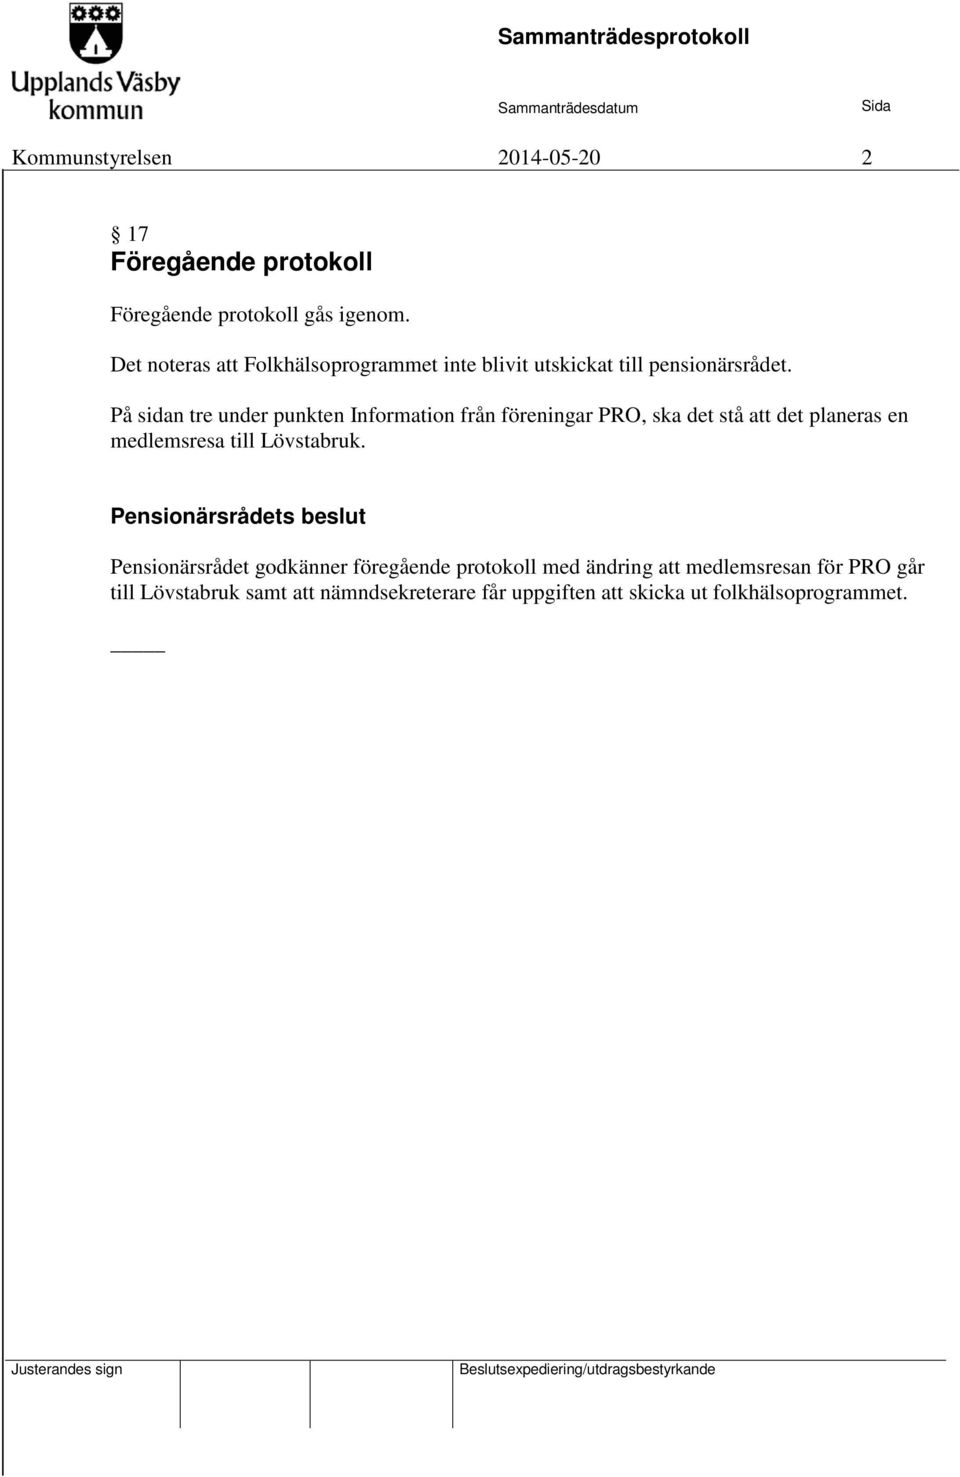 På sidan tre under punkten Information från föreningar PRO, ska det stå att det planeras en medlemsresa till Lövstabruk.